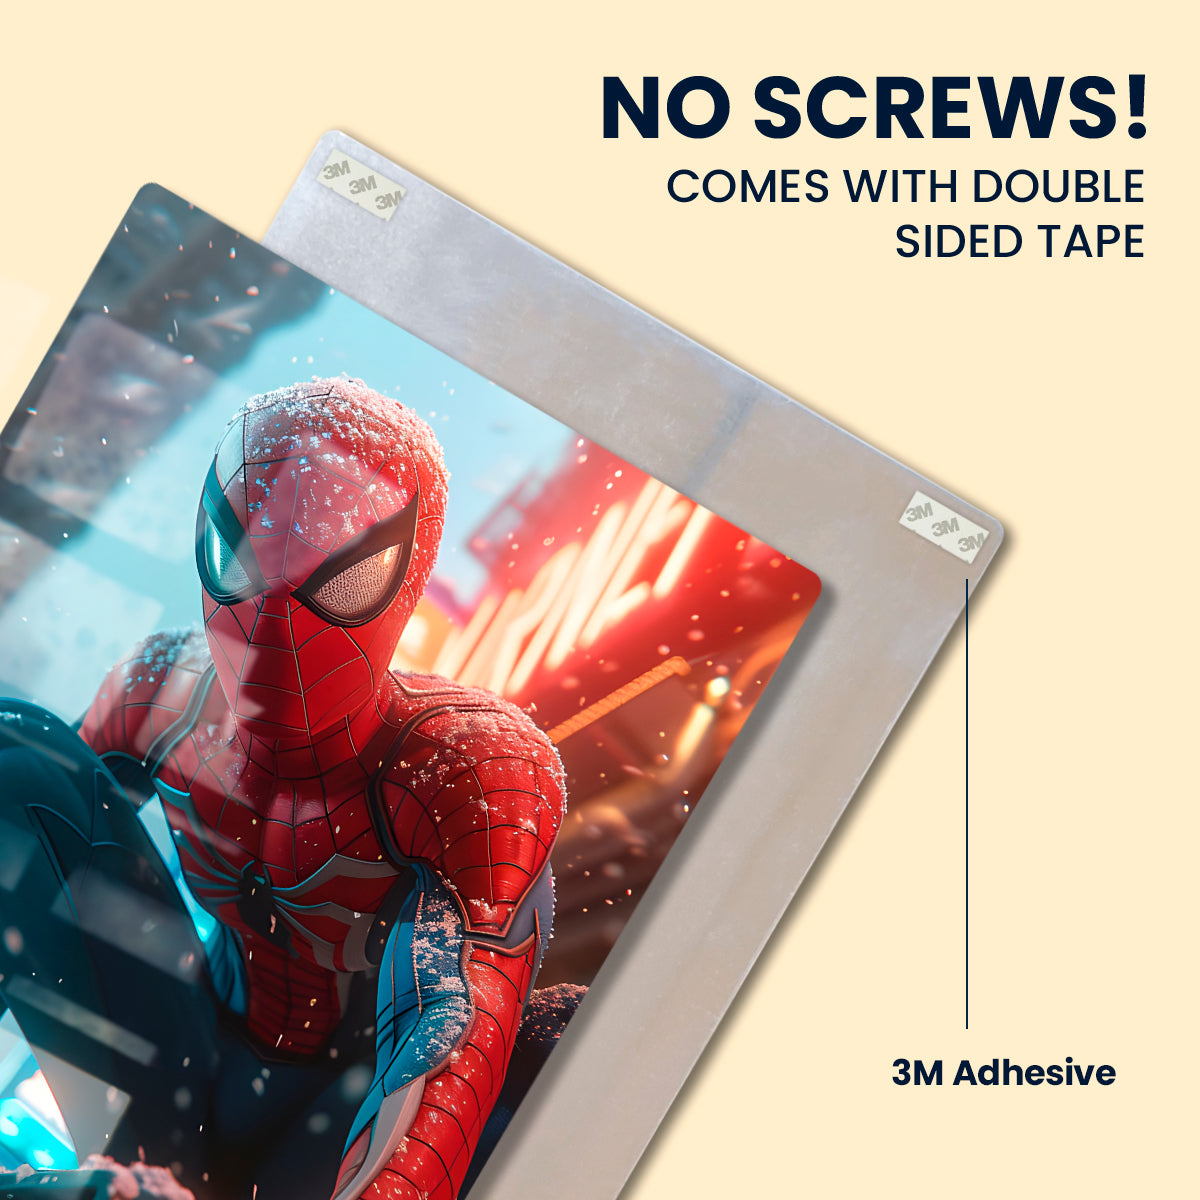 Spider Man - Metal Poster